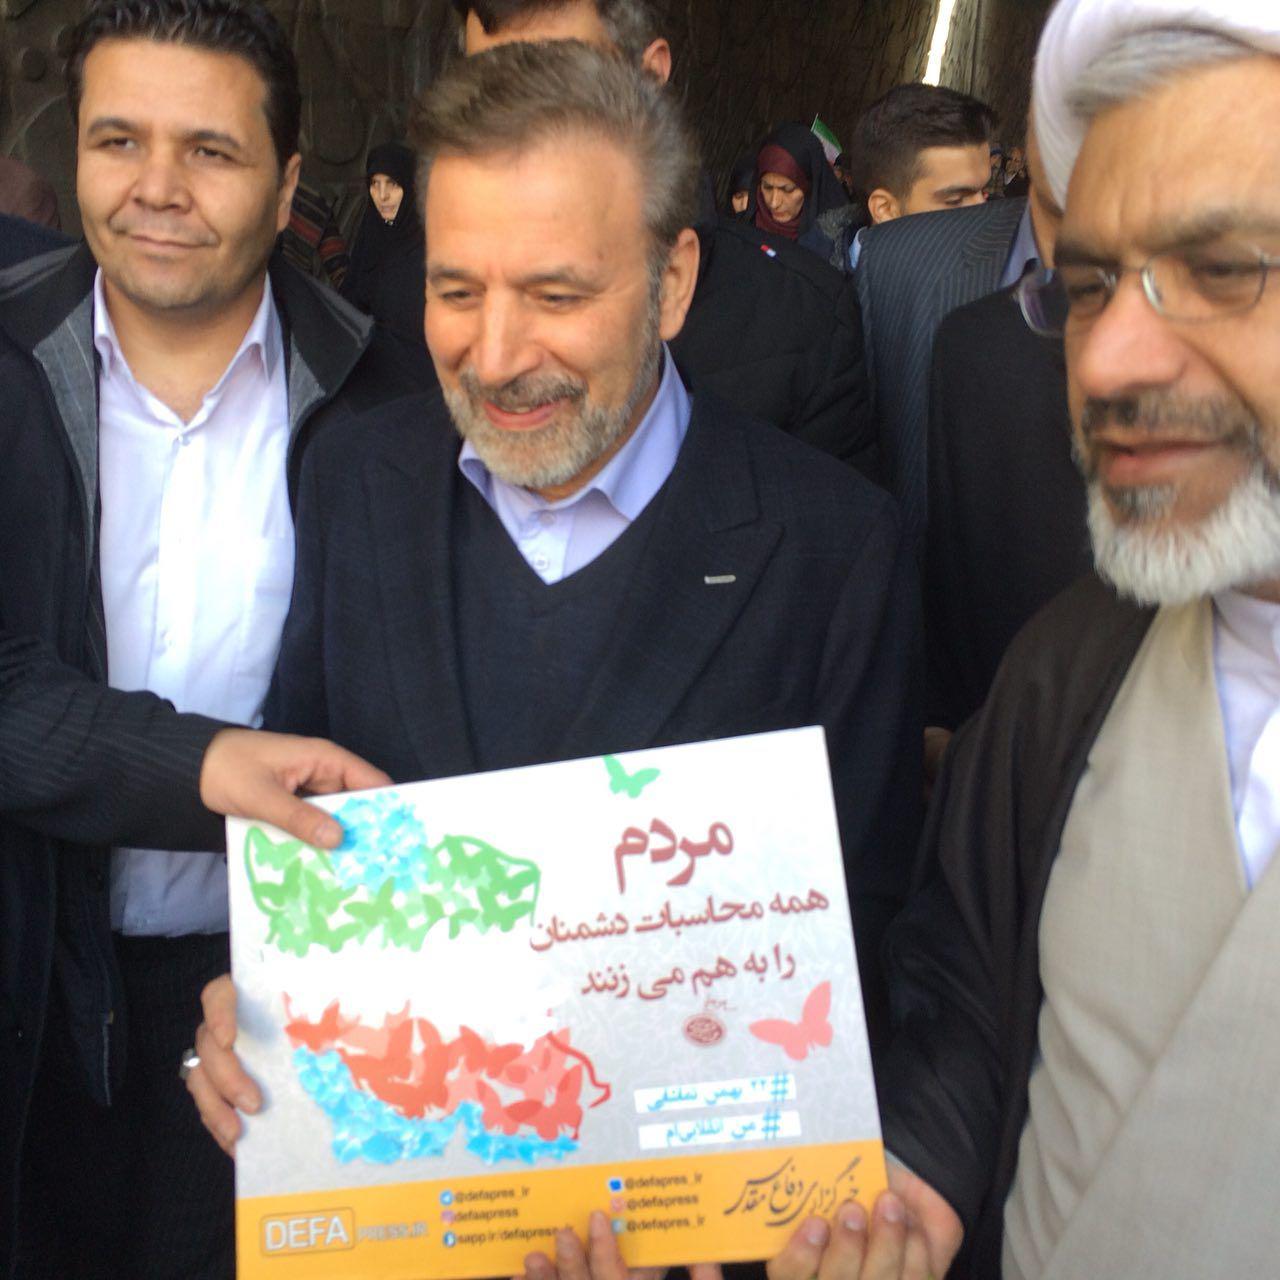 اجرای طرح بیعت با پرچم جمهوری اسلامی ایران/ نمایش «قدر»، «توفان» و جدیدترین زیردریایی ایرانی